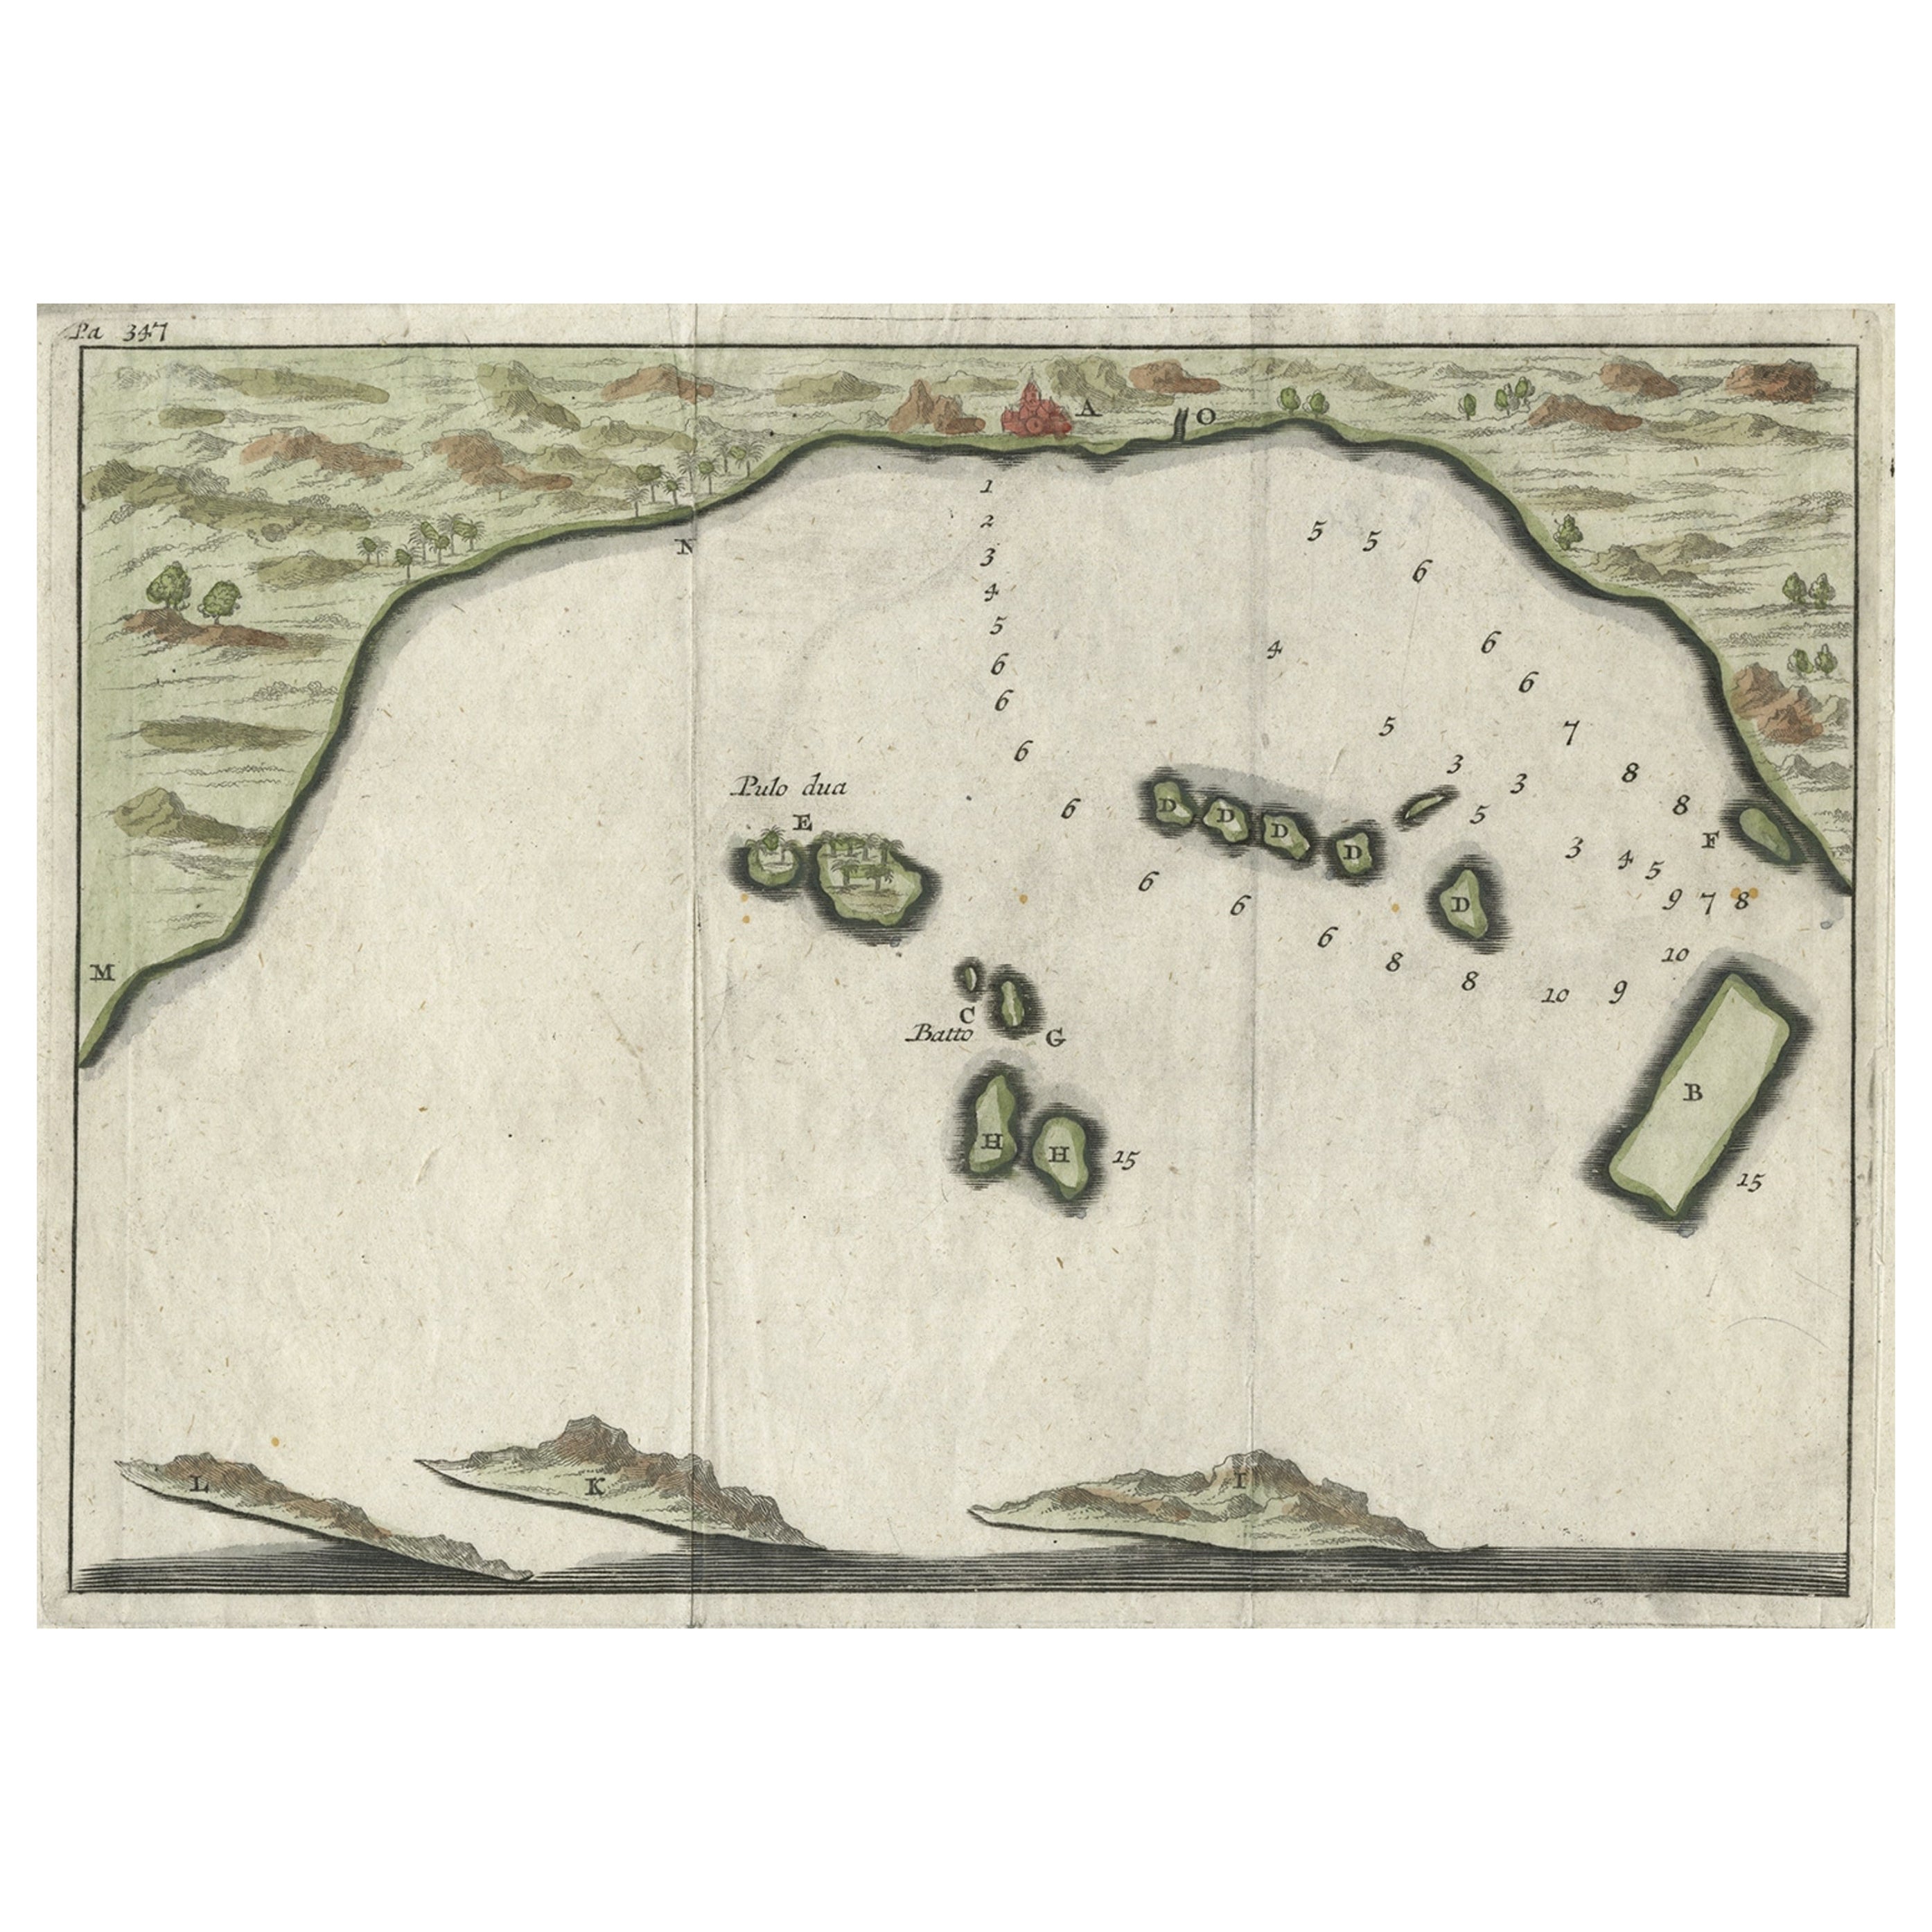 Petite carte du début du 18e siècle de la baie de Banten sur l'île de Java, Indonésie, vers 1725